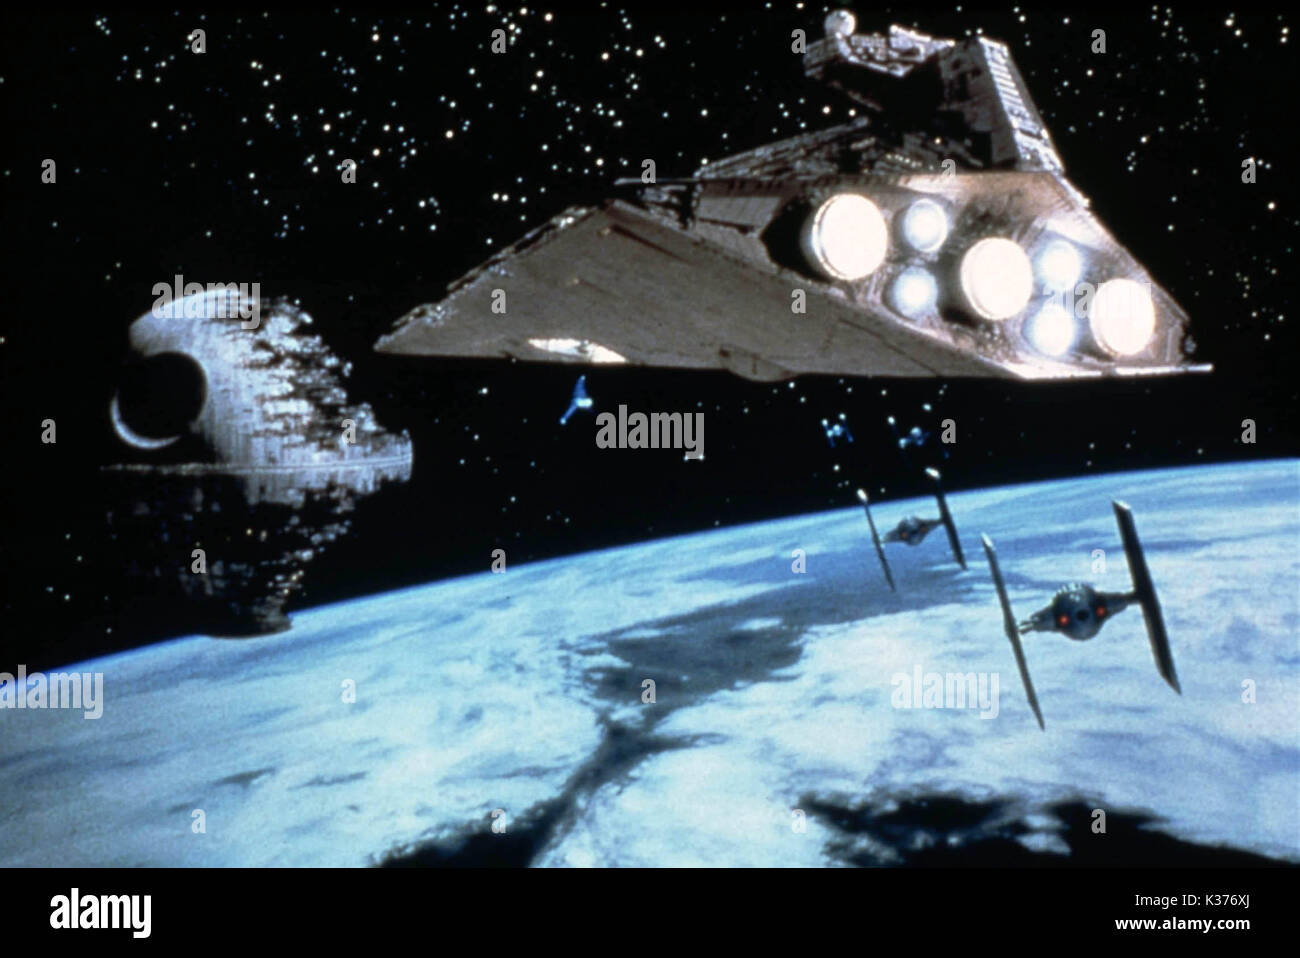 Die RÜCKKEHR DER Jedi-ritter STAR WARS: Episode VI - Die Rückkehr der Jedi-Ritter Datum: 1983 Stockfoto